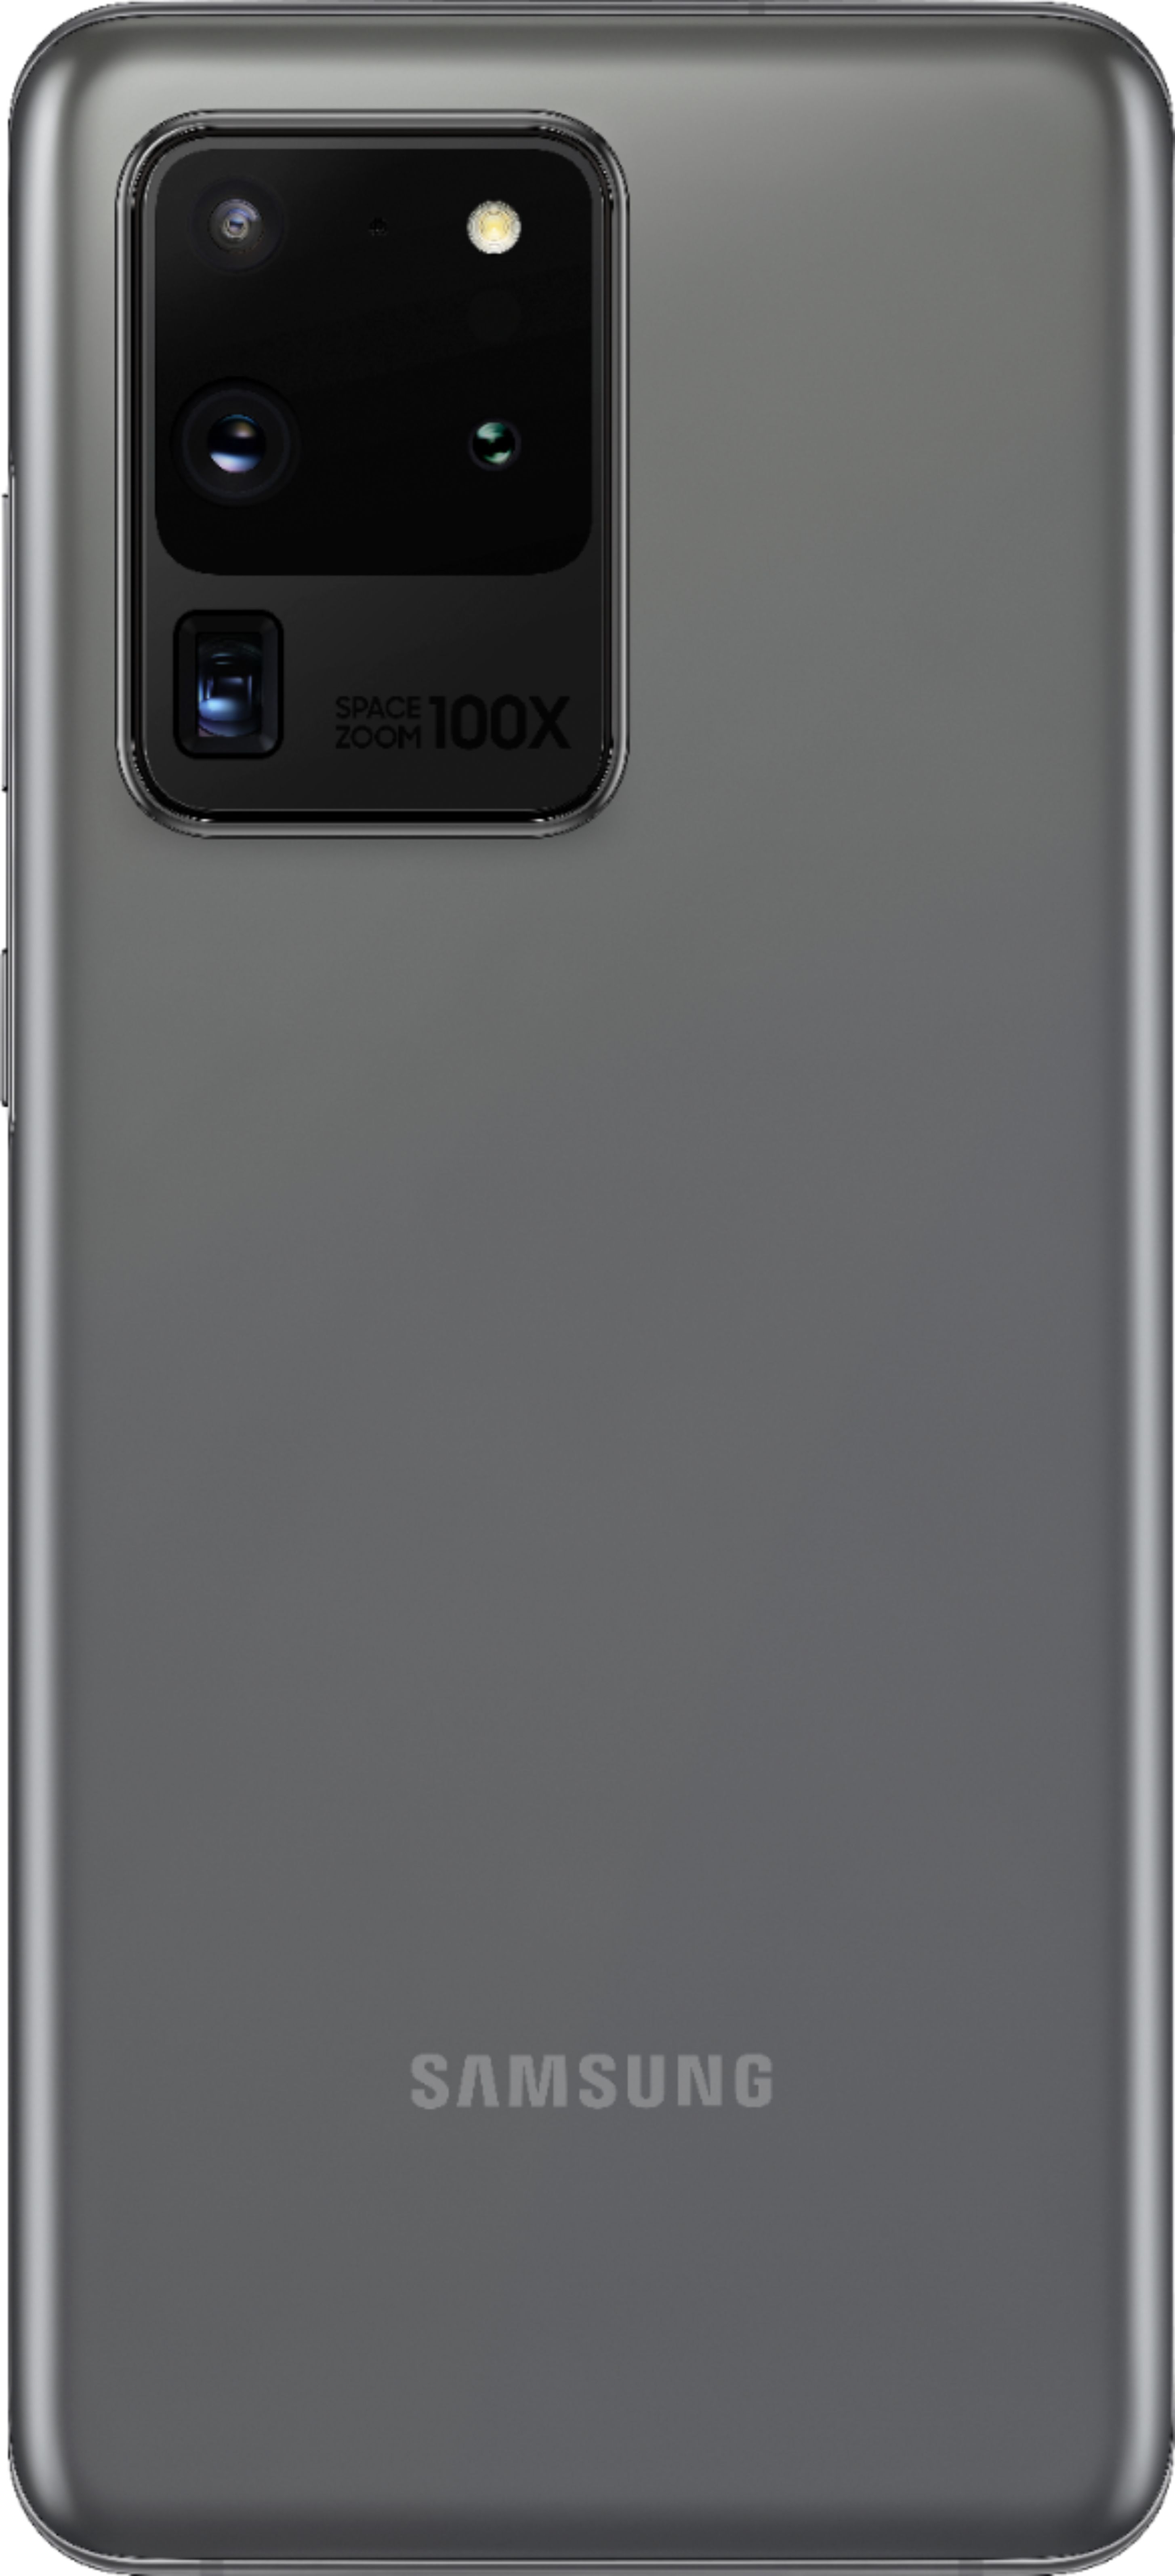 スマートフォン/携帯電話 スマートフォン本体 Best Buy: Samsung Galaxy S20 Ultra 5G Enabled 128GB (Unlocked) Cosmic Gray  SM-G988UZAAXAA